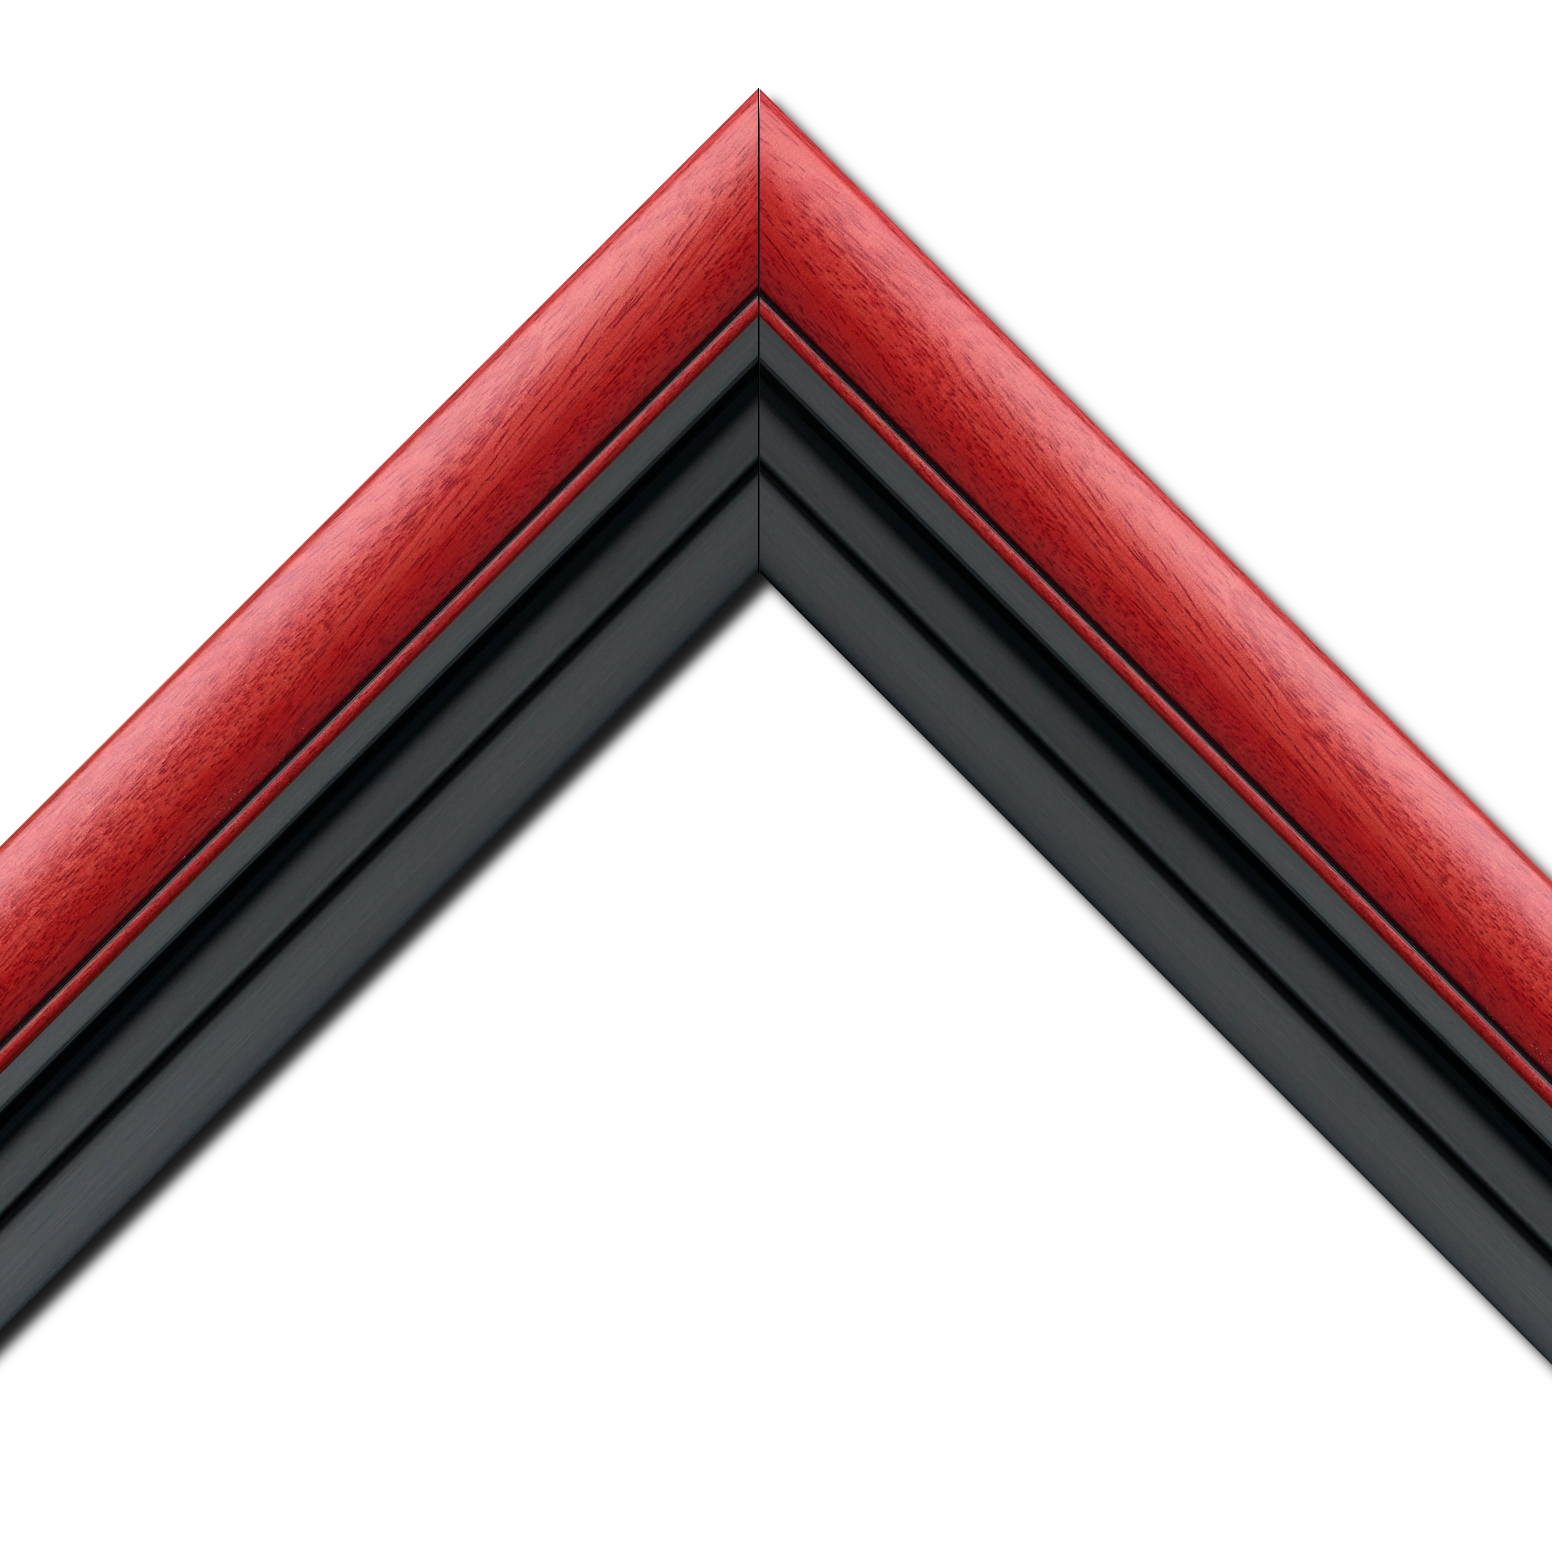 Baguette bois profil arrondi largeur 4.7cm couleur rouge cerise satiné rehaussé d'un filet noir + bois caisse américaine profil escalier largeur 4.4cm noir mat   (spécialement conçu pour les châssis d'une épaisseur jusqu’à 2.5cm ) largeur total du cadre : 8.3cm